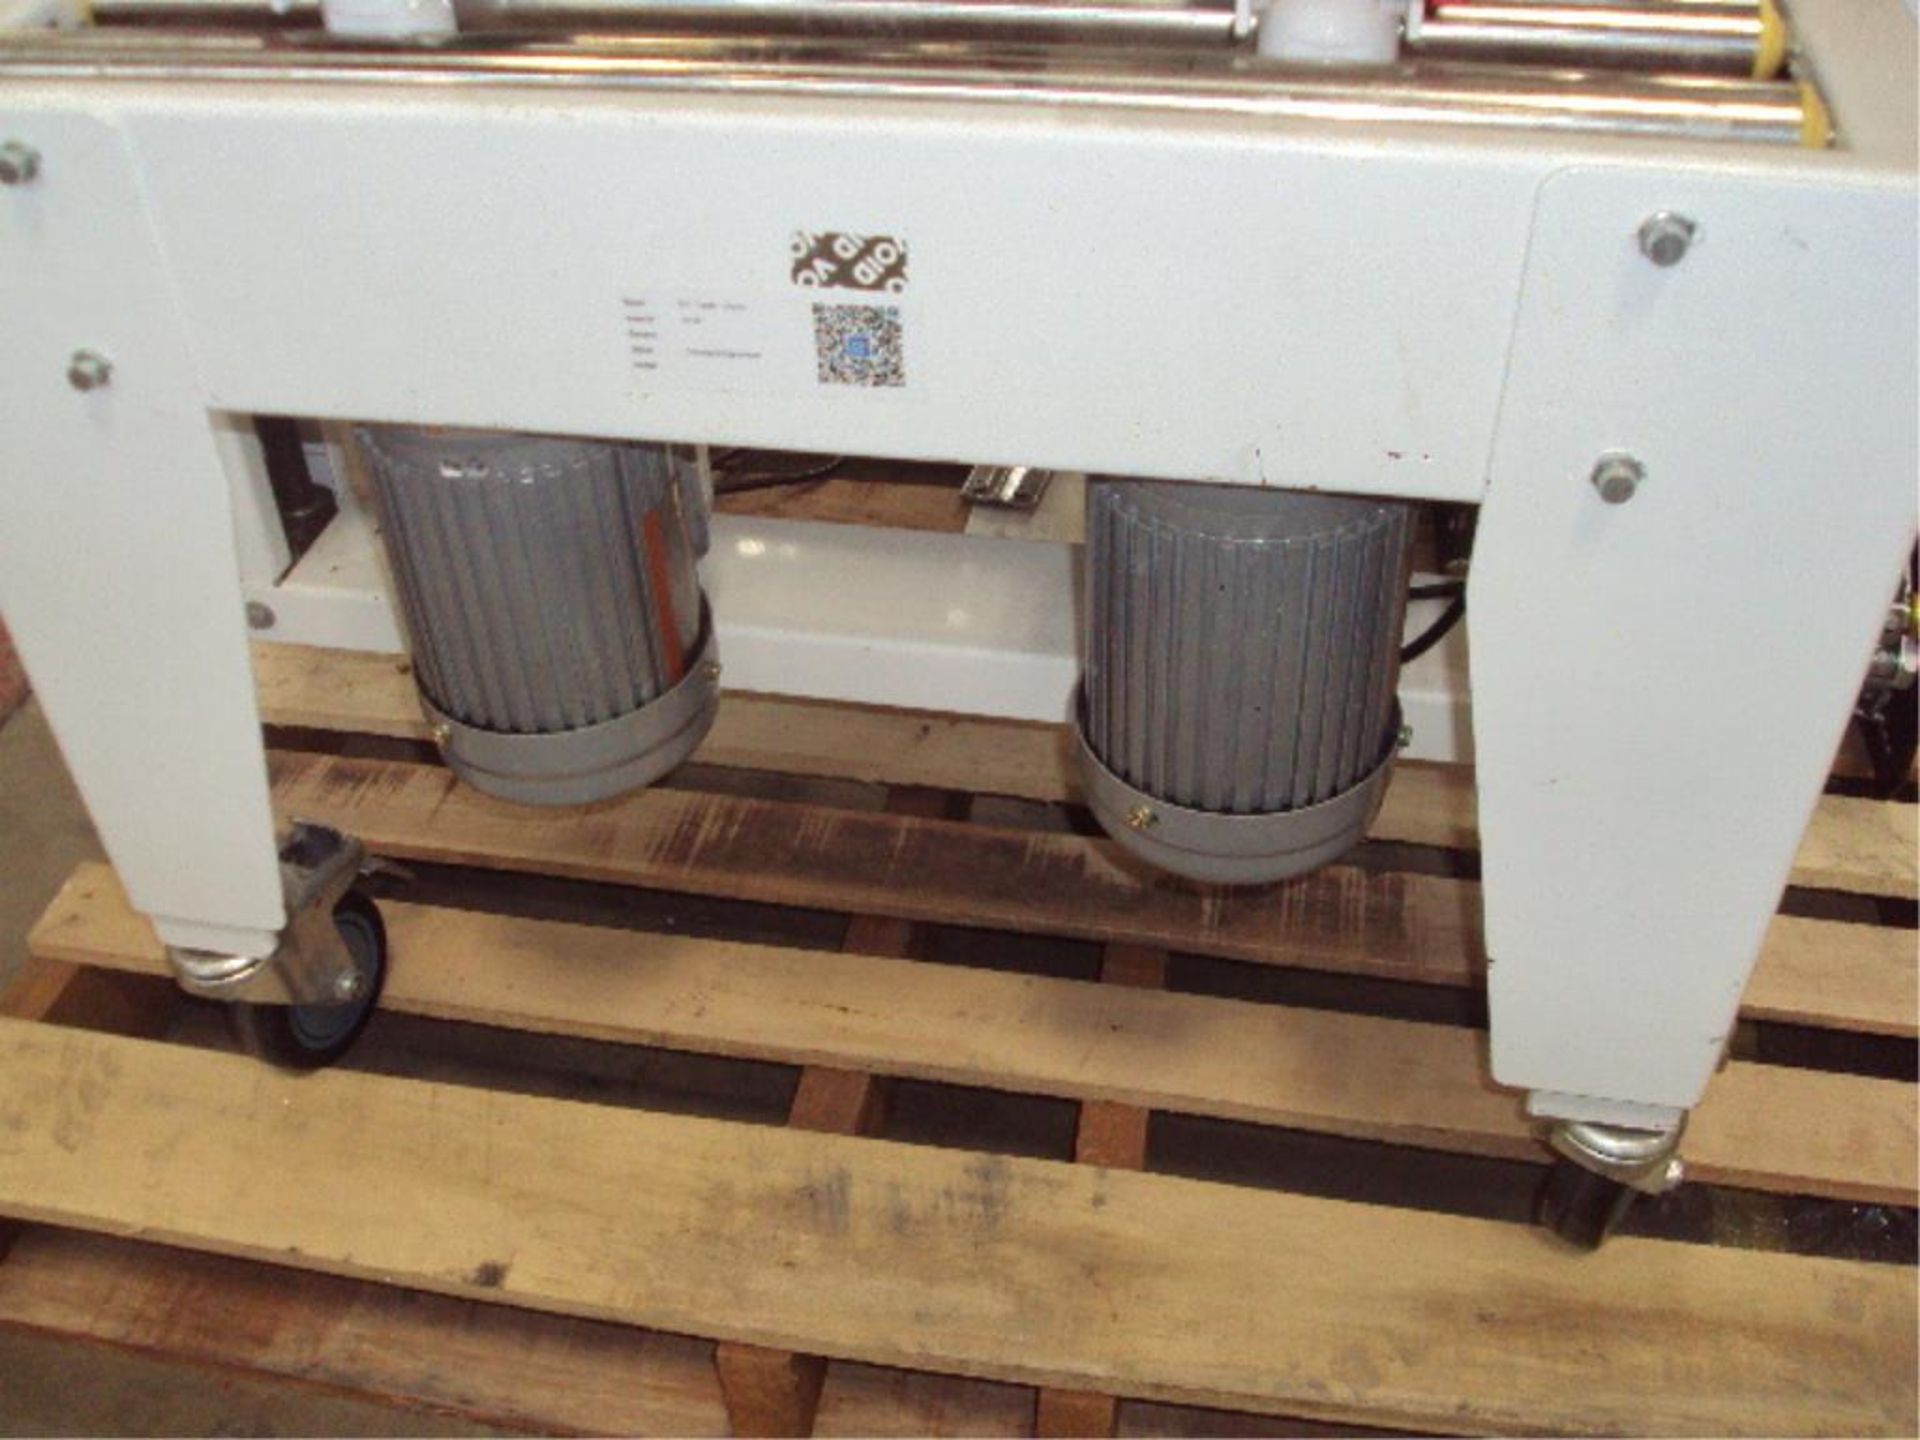 Mobile Carton Sealer Machine - Image 7 of 9